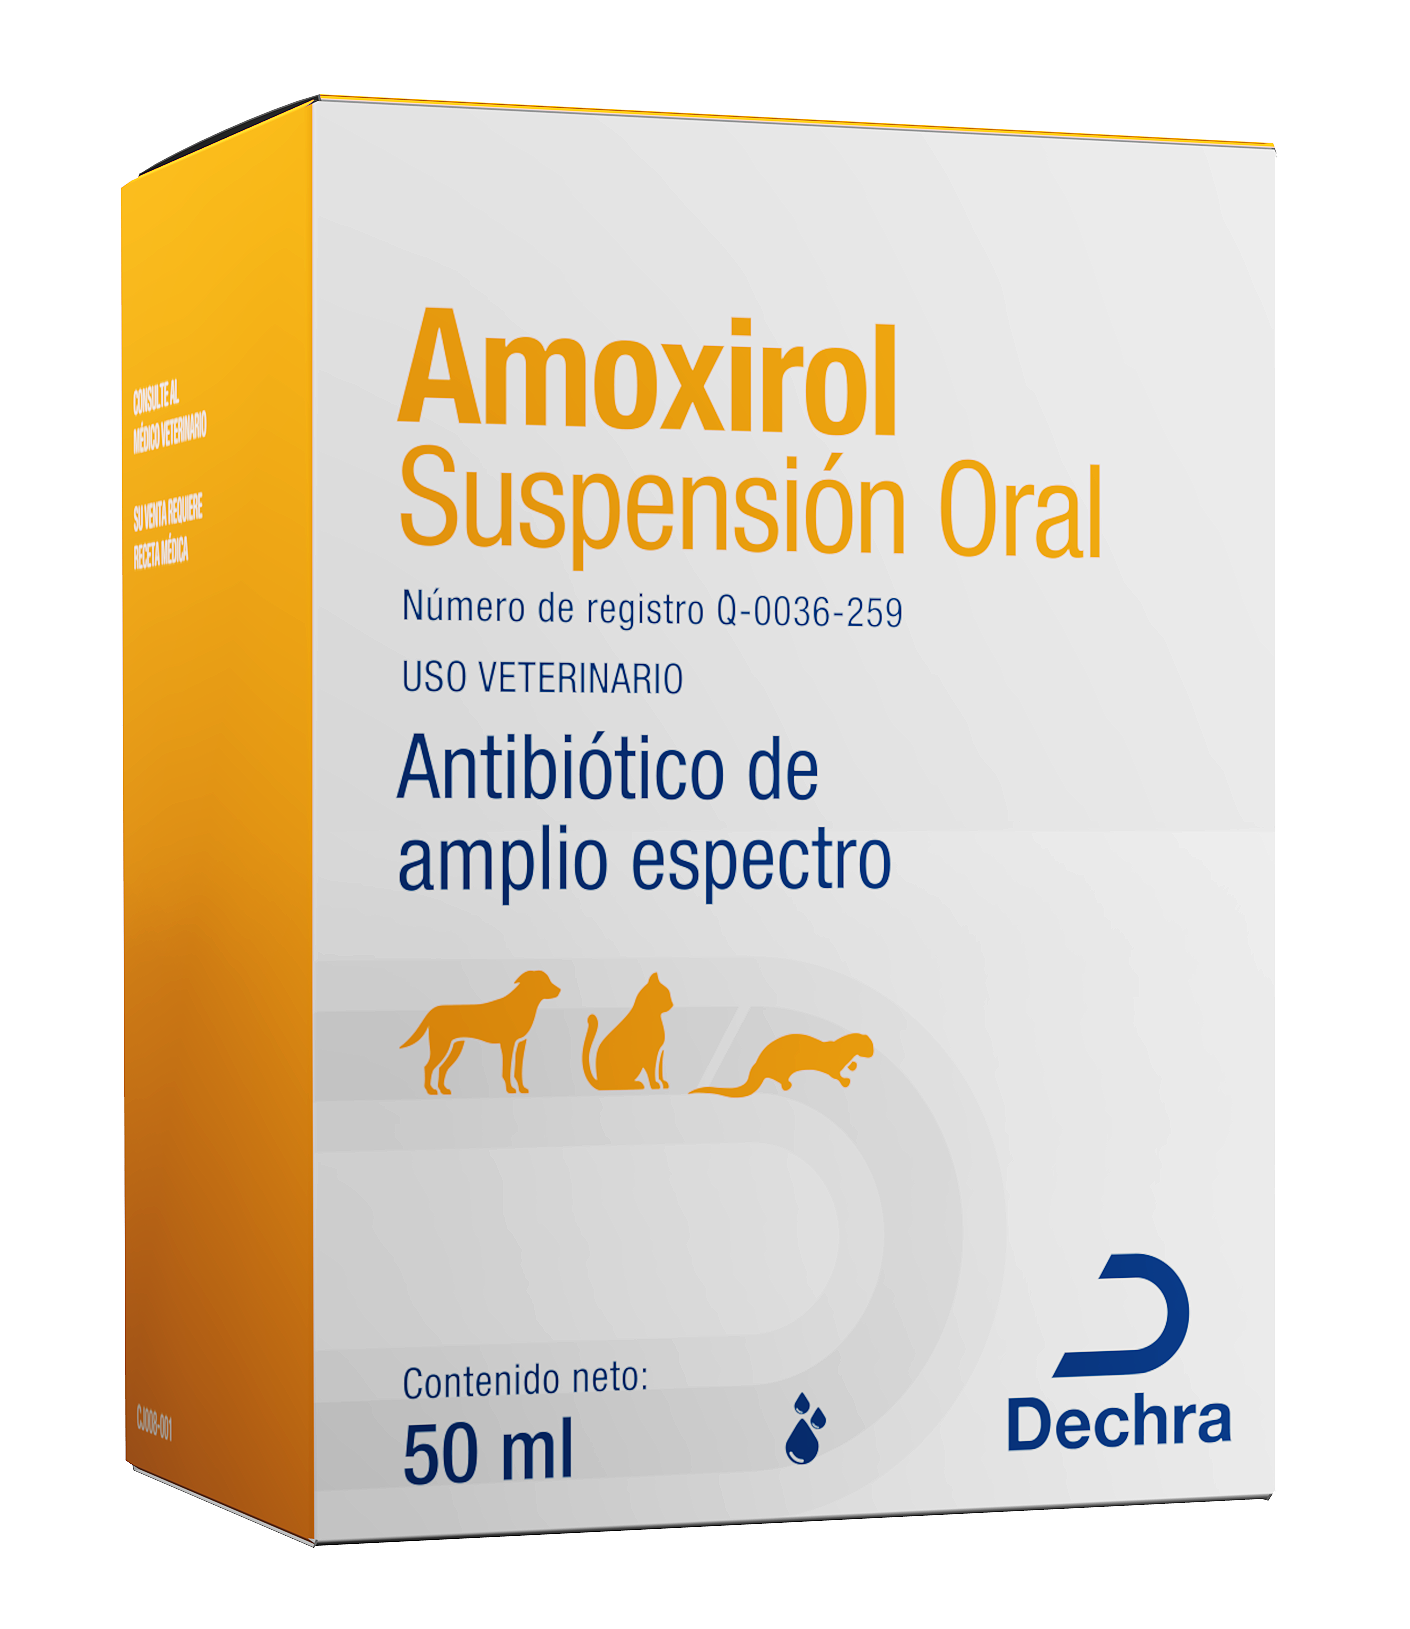 Amoxirol Suspensión Oral 50ml (requiere receta medica veterinaria vigente)